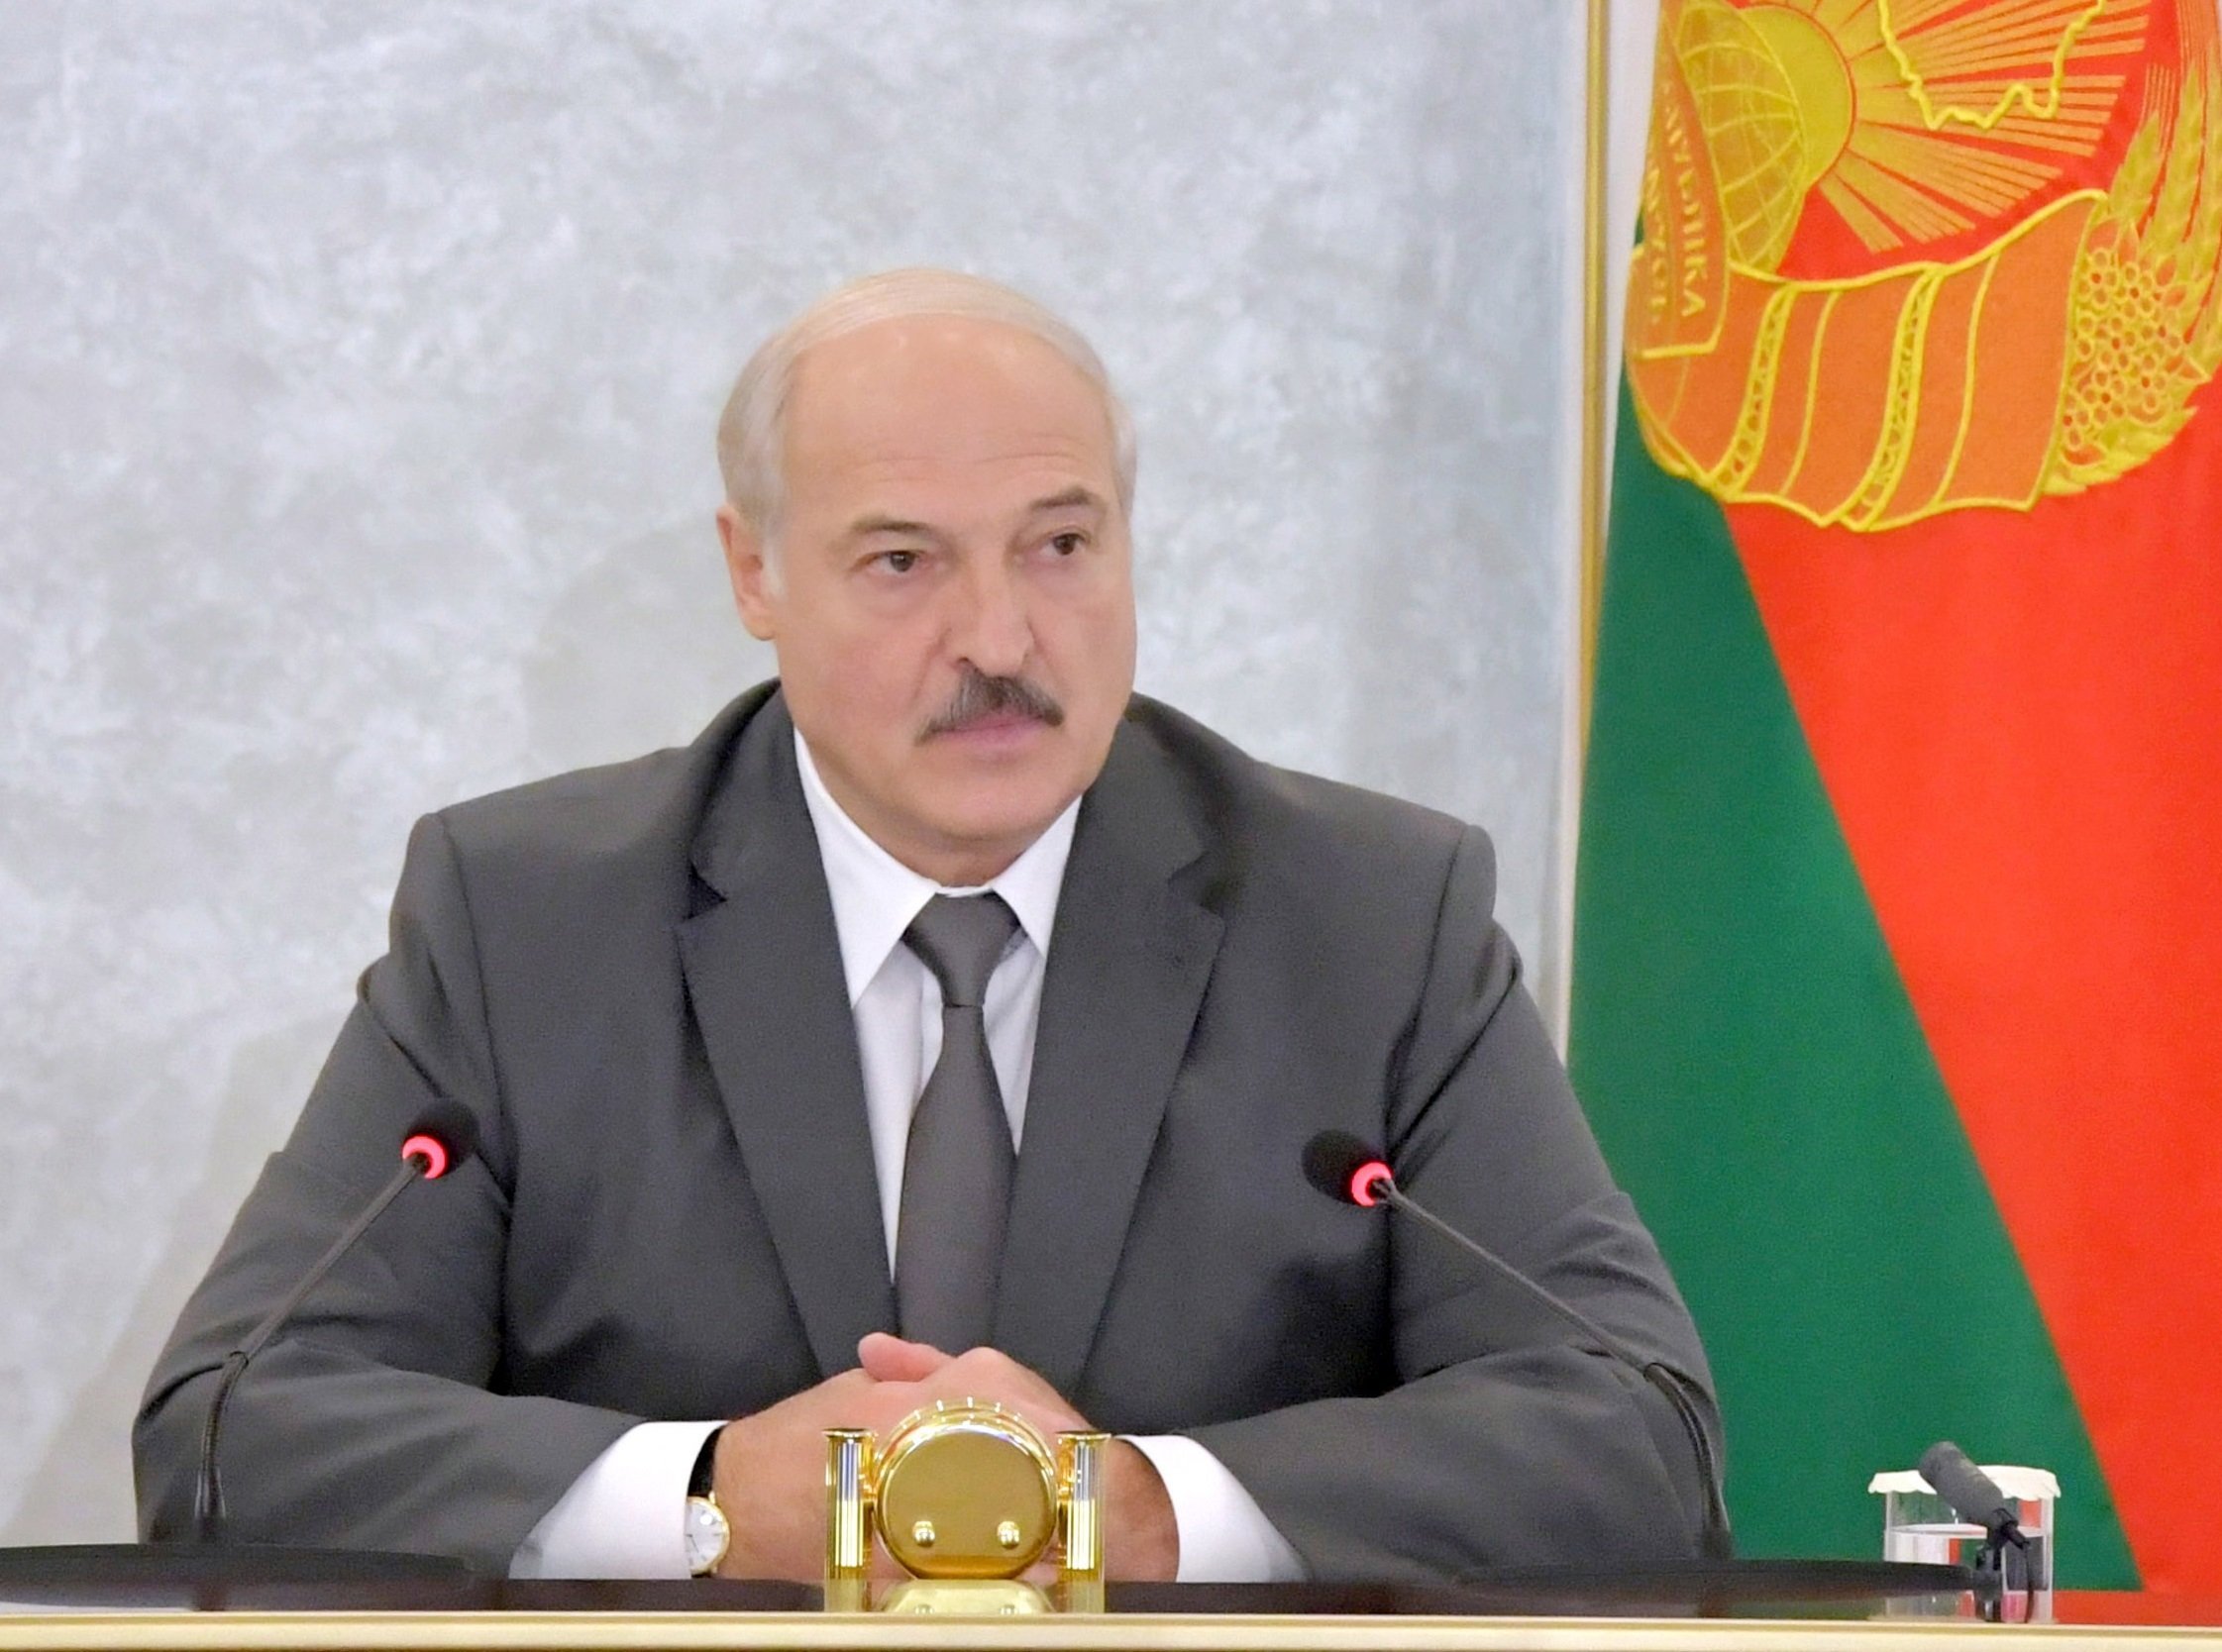 La UE inclou a la llista negra uns 40 alts càrrecs de Lukaixenko